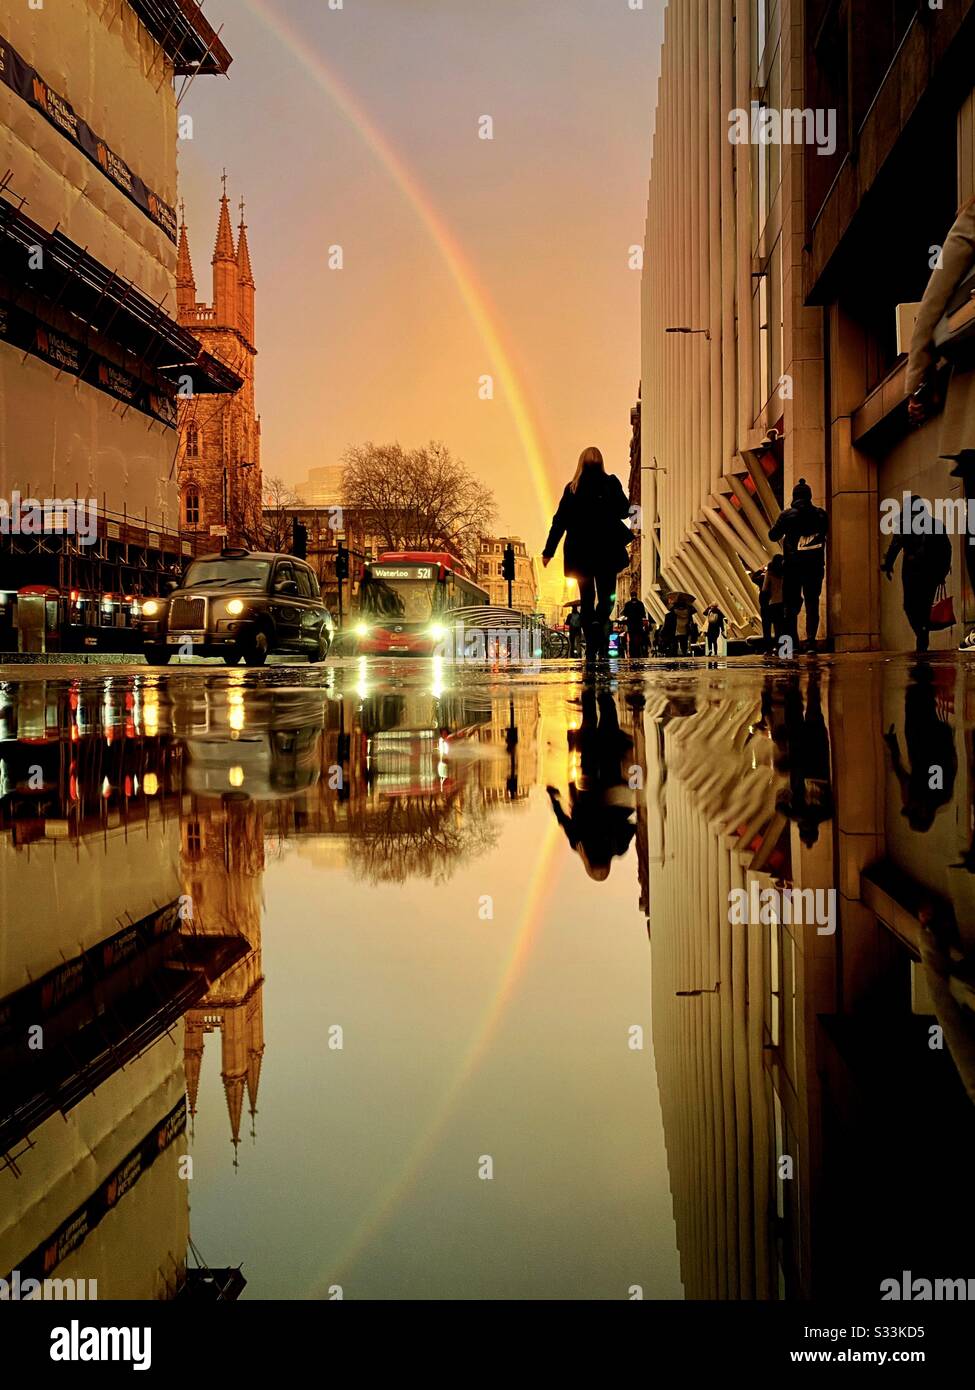 Météo au Royaume-Uni : un arc-en-ciel brille au-dessus du bâtiment Walkie Talkie, tel qu'il se reflète dans une rue pluvieuse à Holborn Viaduc, Londres, Angleterre. Banque D'Images